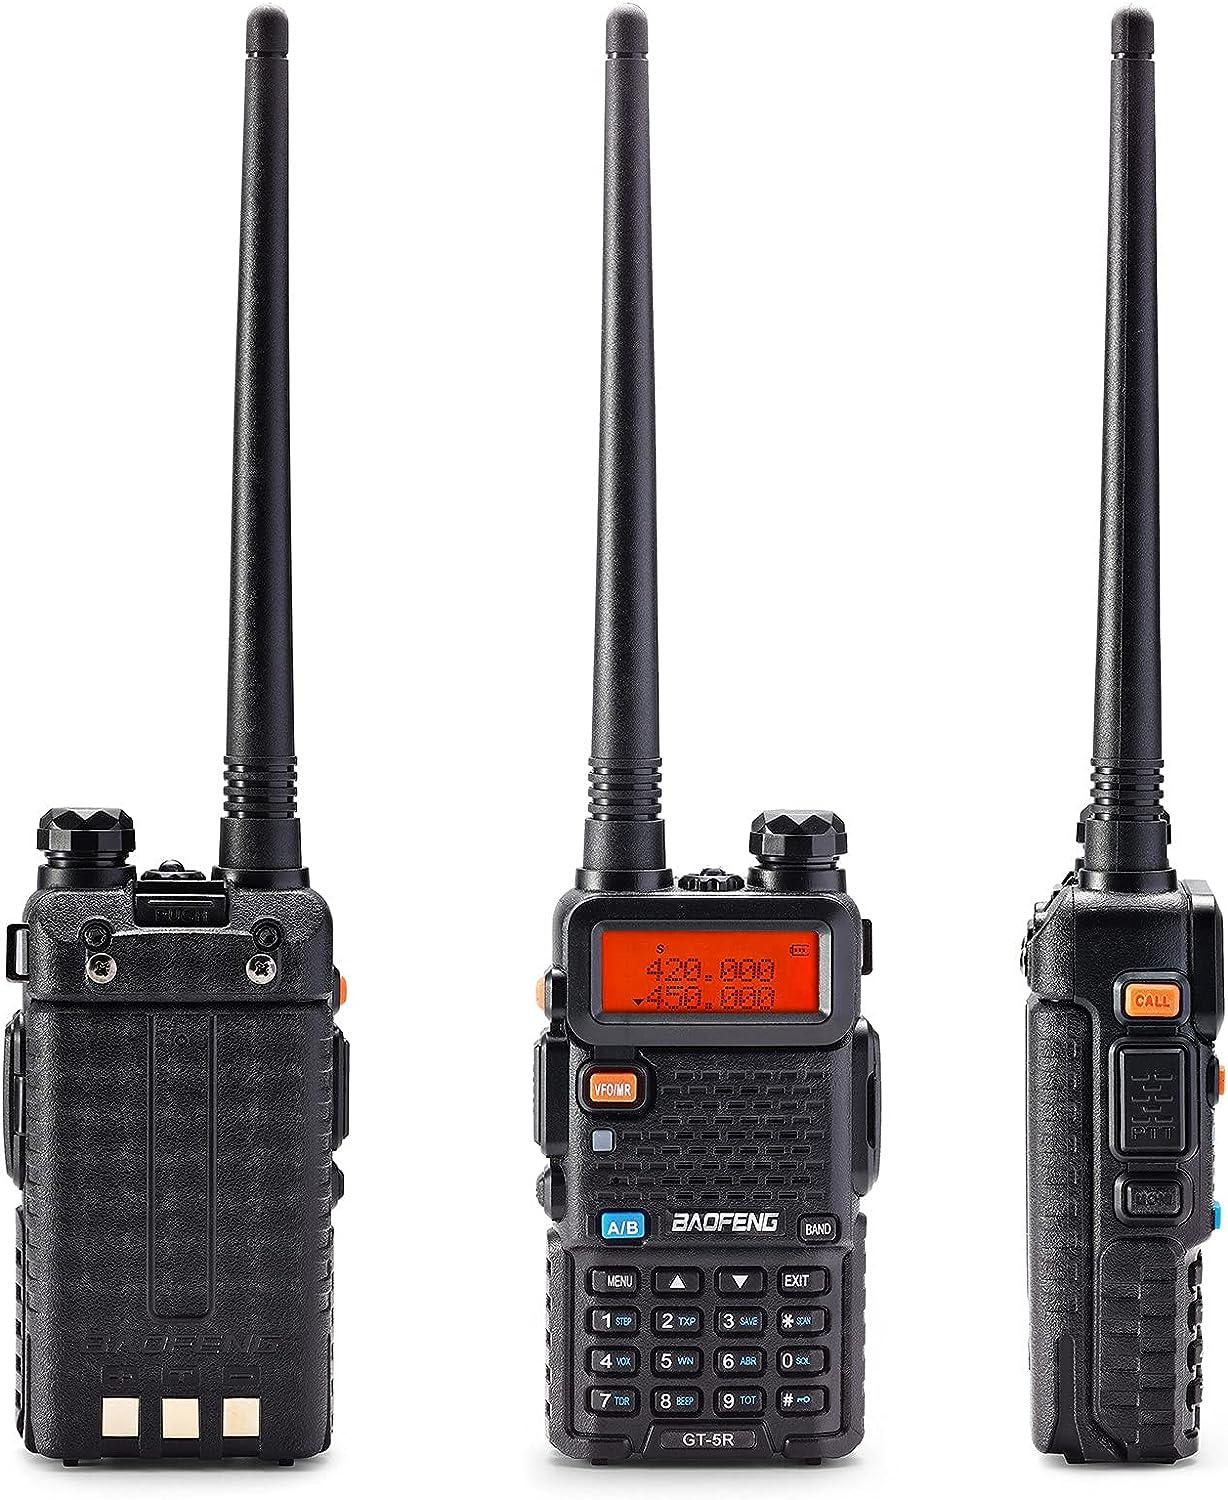 Baofeng UV-5R Two Way Radio Dual Band 144-148/420-450Mhz Walkie Talkie  1800mAh Li-ion Battery(Black)